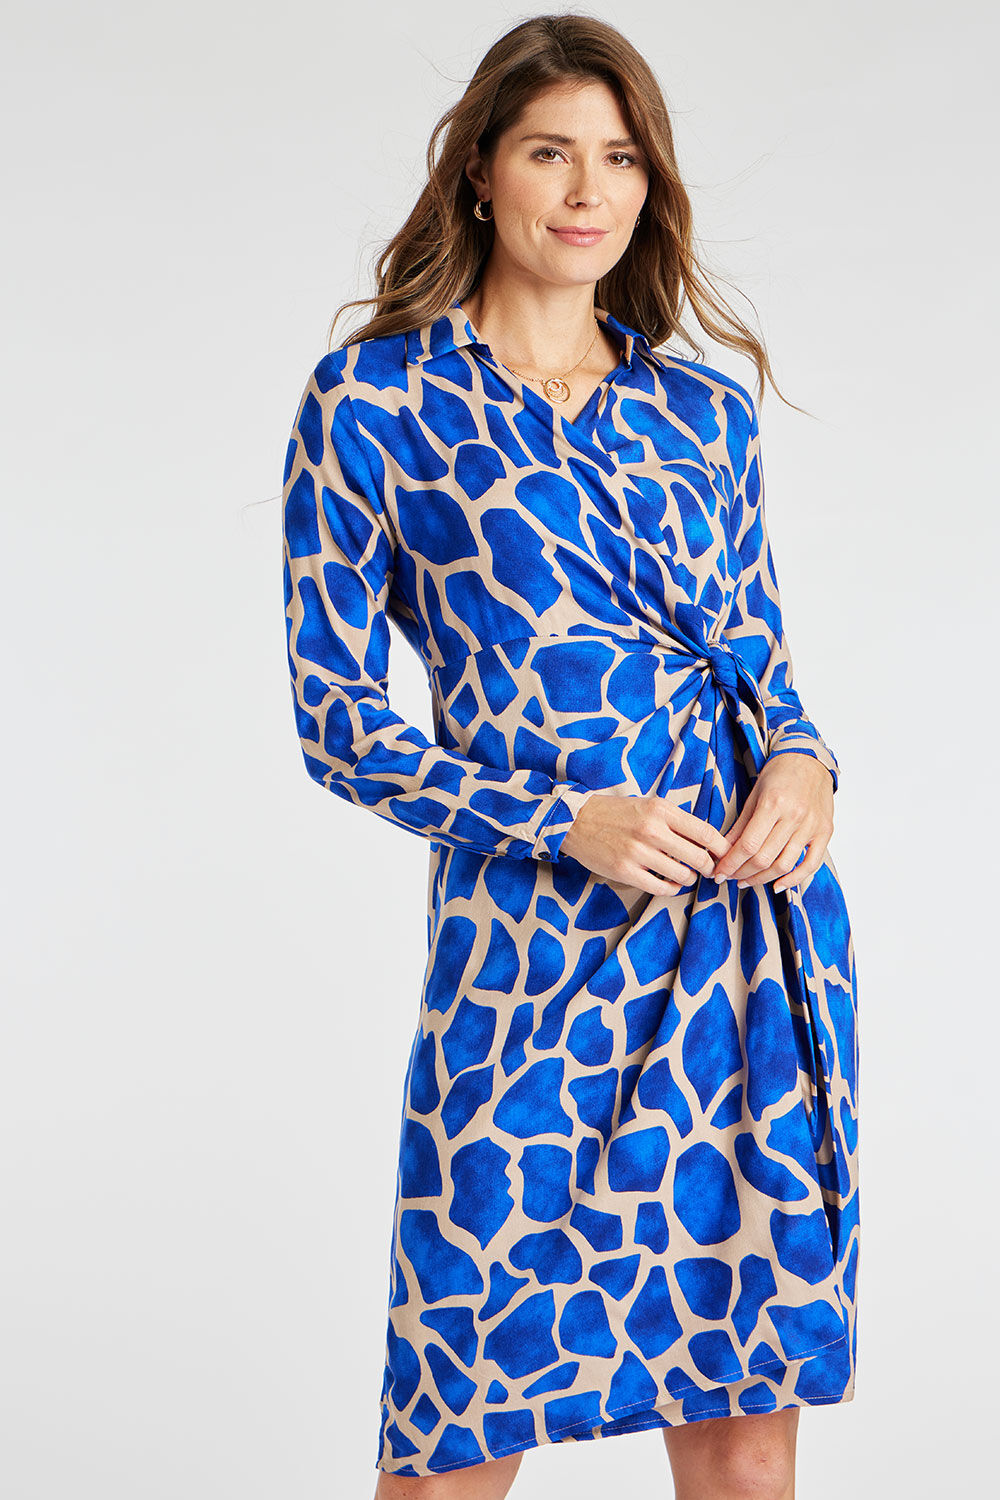 Bonmarche Blue Giraffe Print Wrap Front Dress, Size: 8